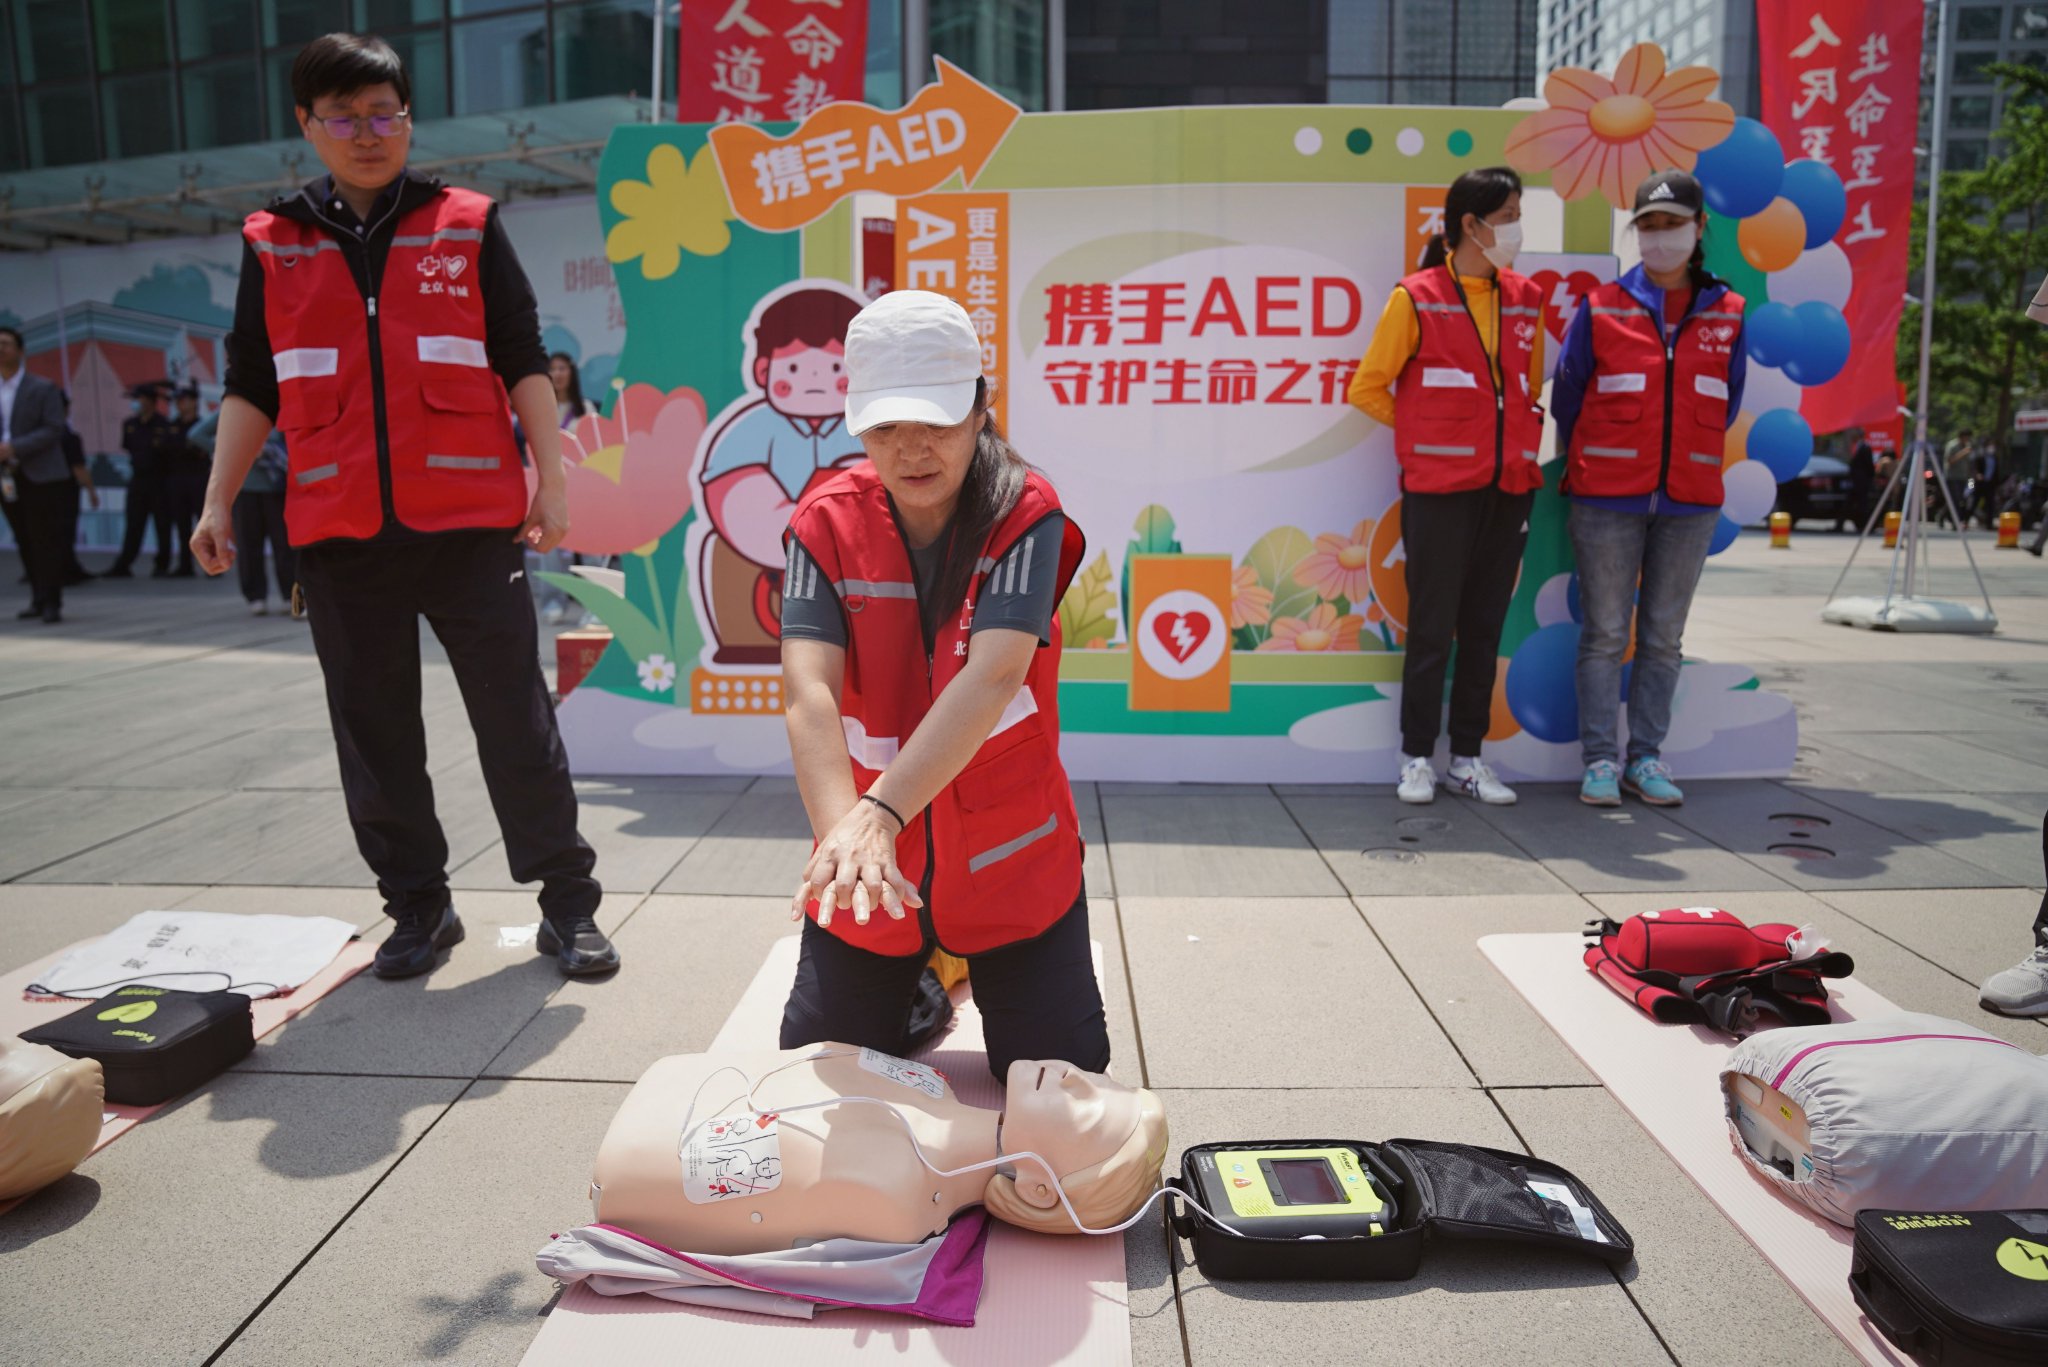 工作人員在現場講解AED的使用方法。新京報記者 薛珺 攝